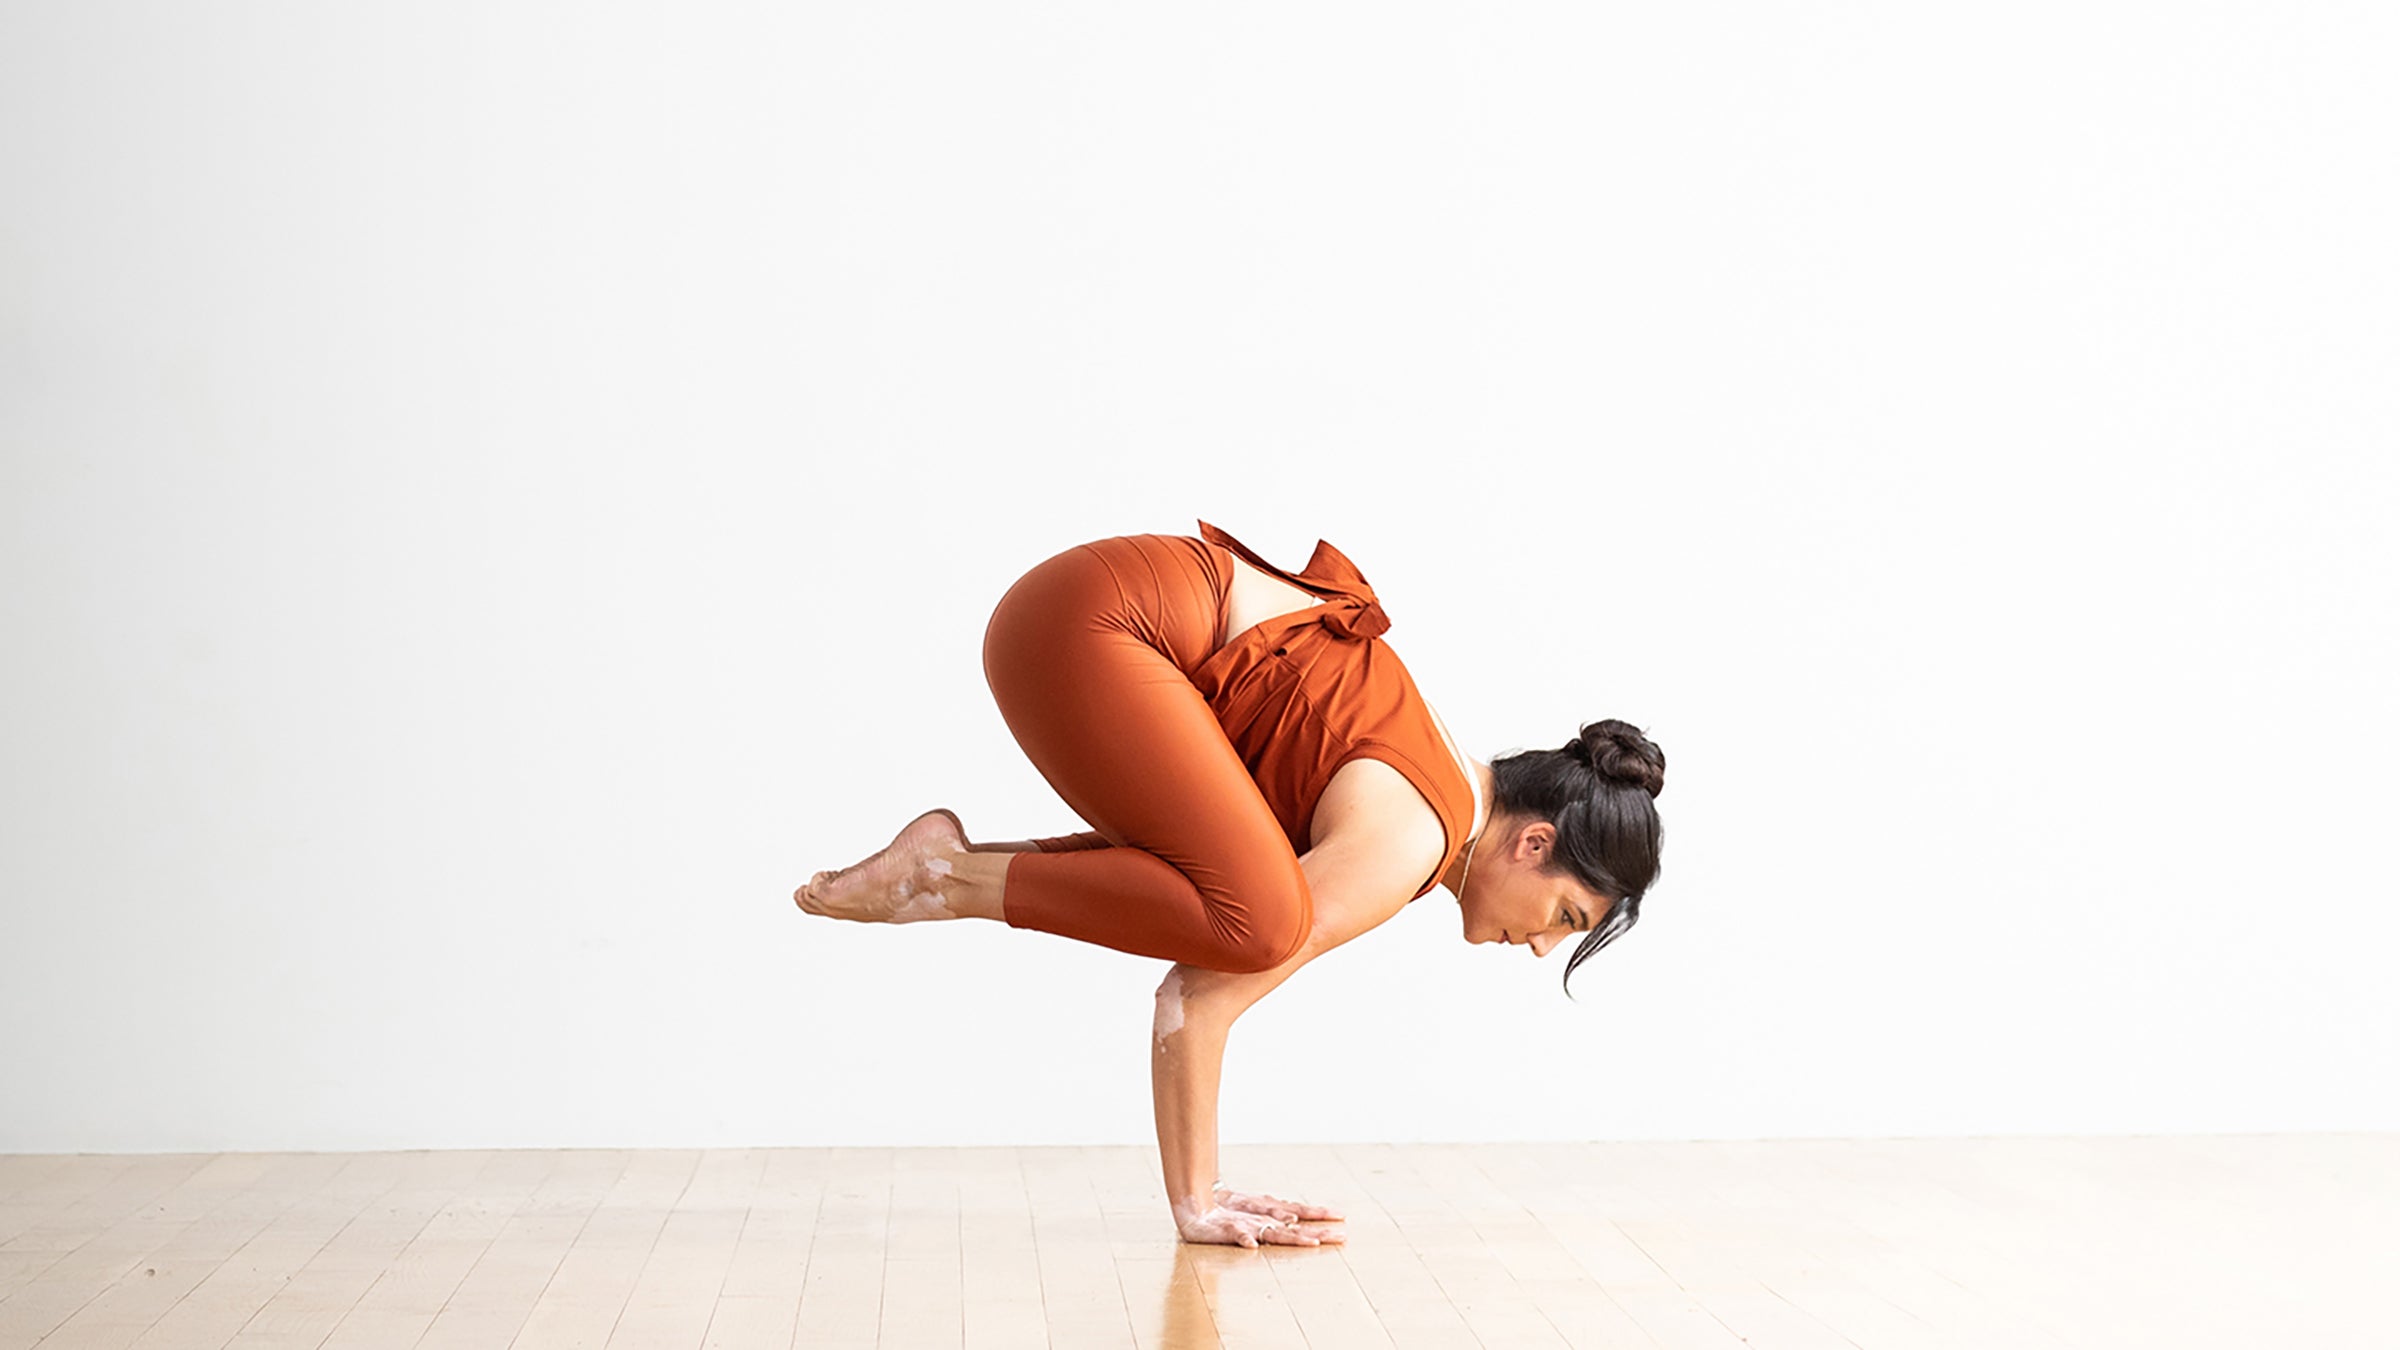 Yoga Backward-Bending Poses Benefits - YogaCanada